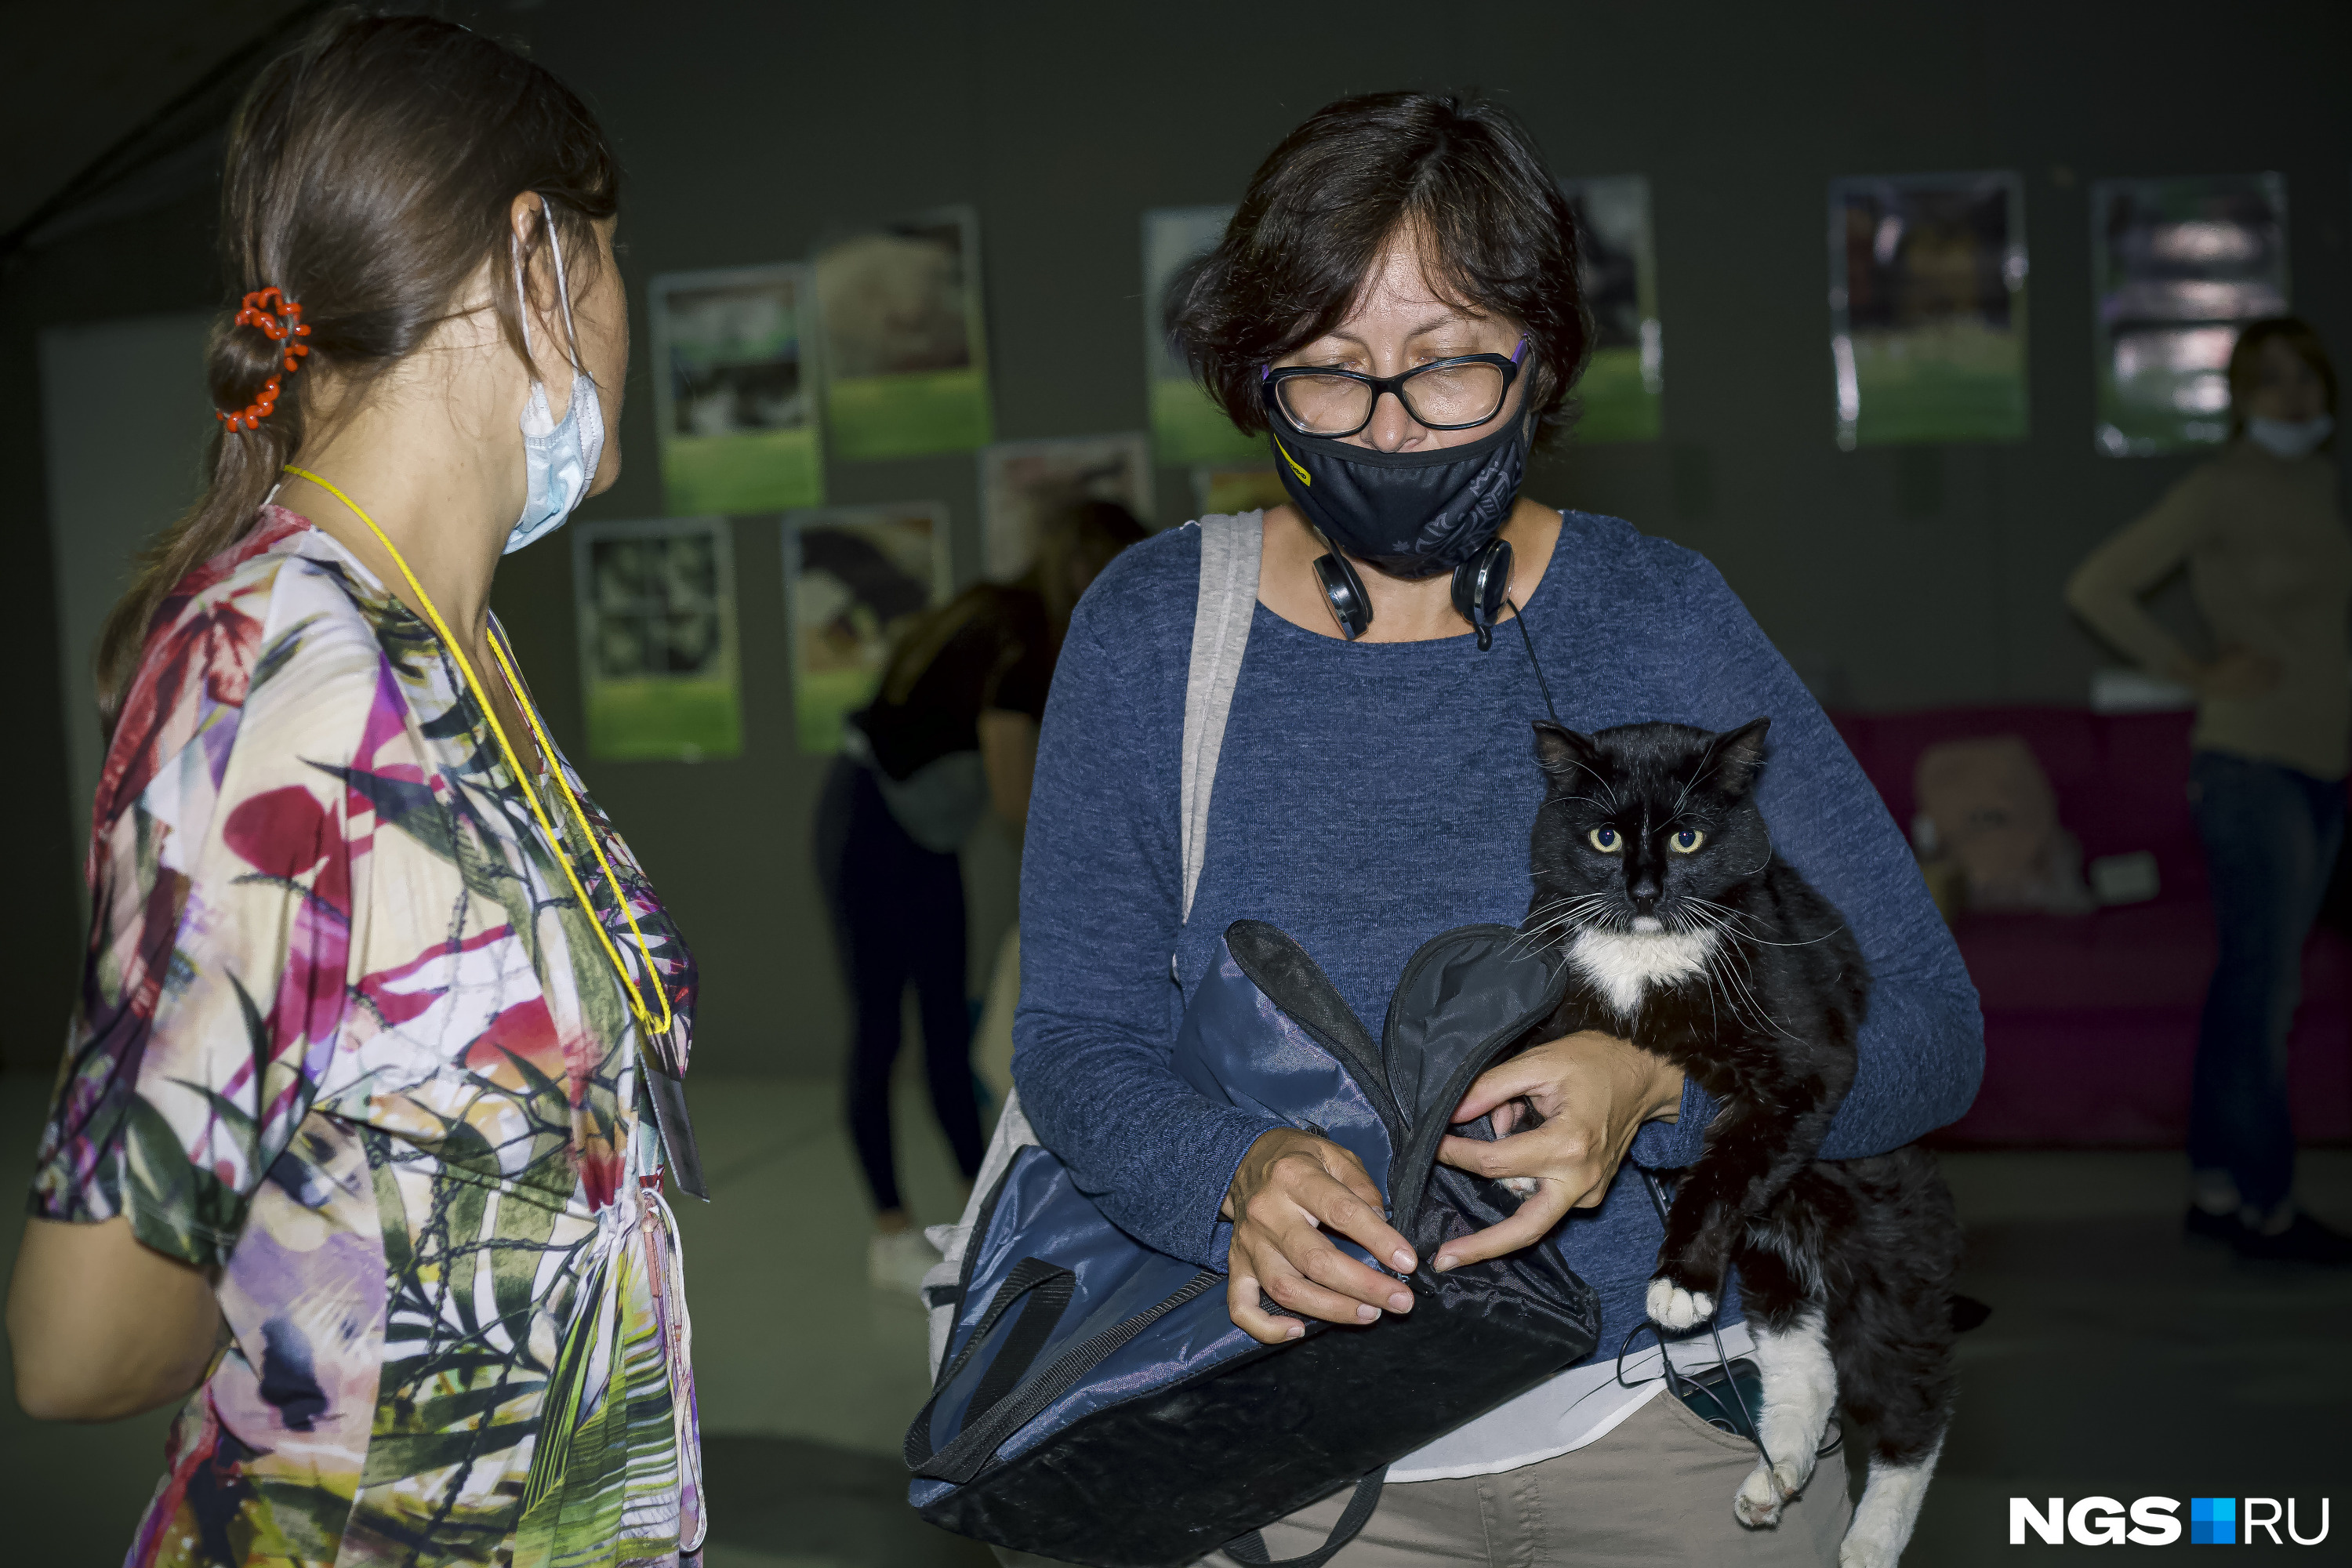 По словам волонтера, прижиться у новых хозяев могут не только котята, но и взрослые коты и собаки. Главное — дать им время на адаптацию